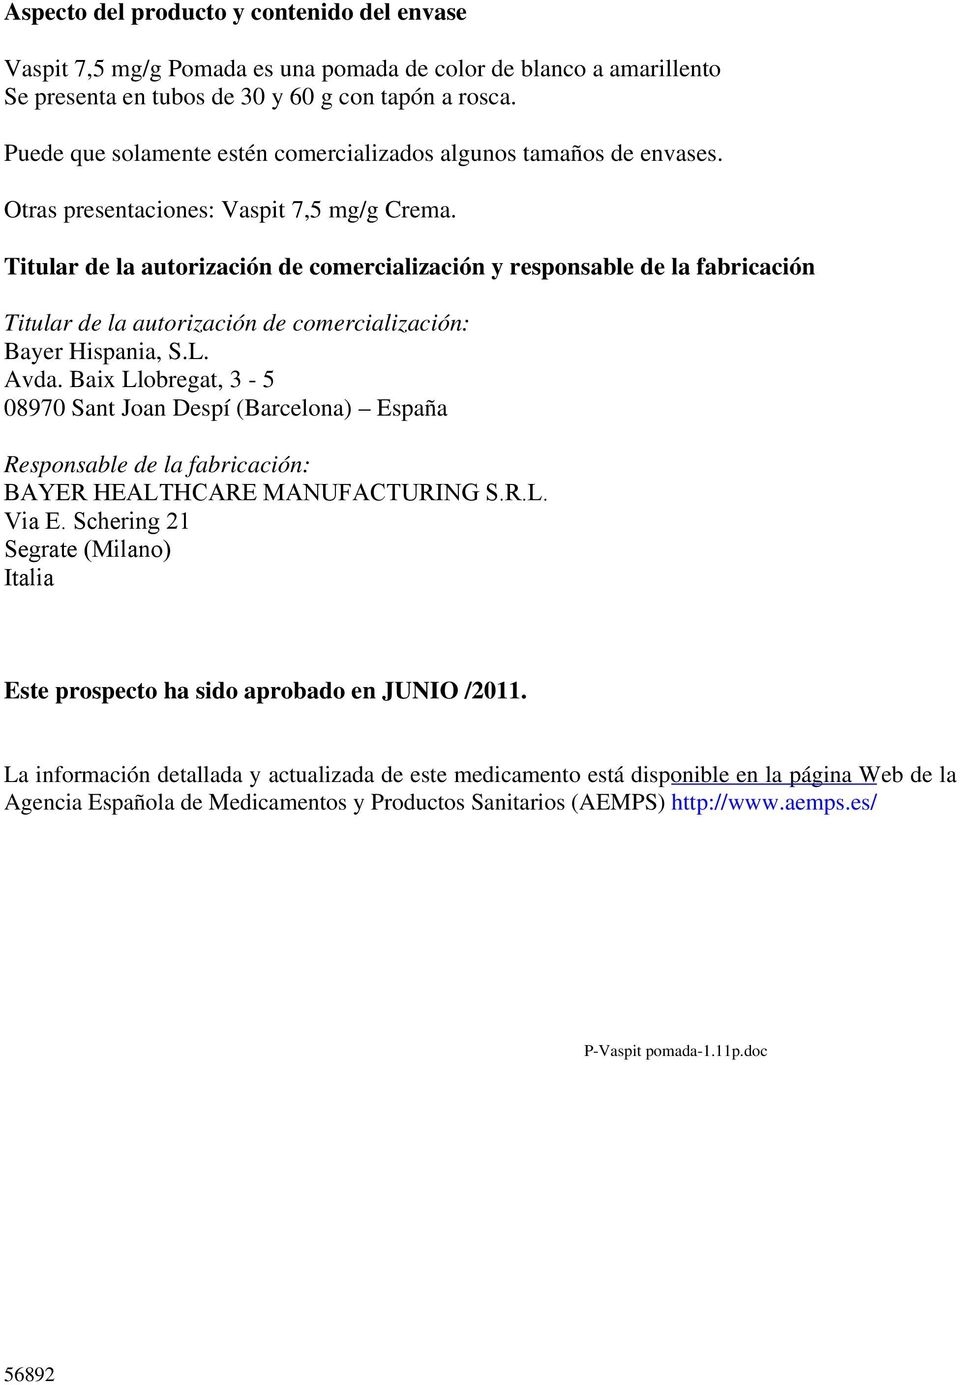 Titular de la autorización de comercialización y responsable de la fabricación Titular de la autorización de comercialización: Bayer Hispania, S.L. Avda.